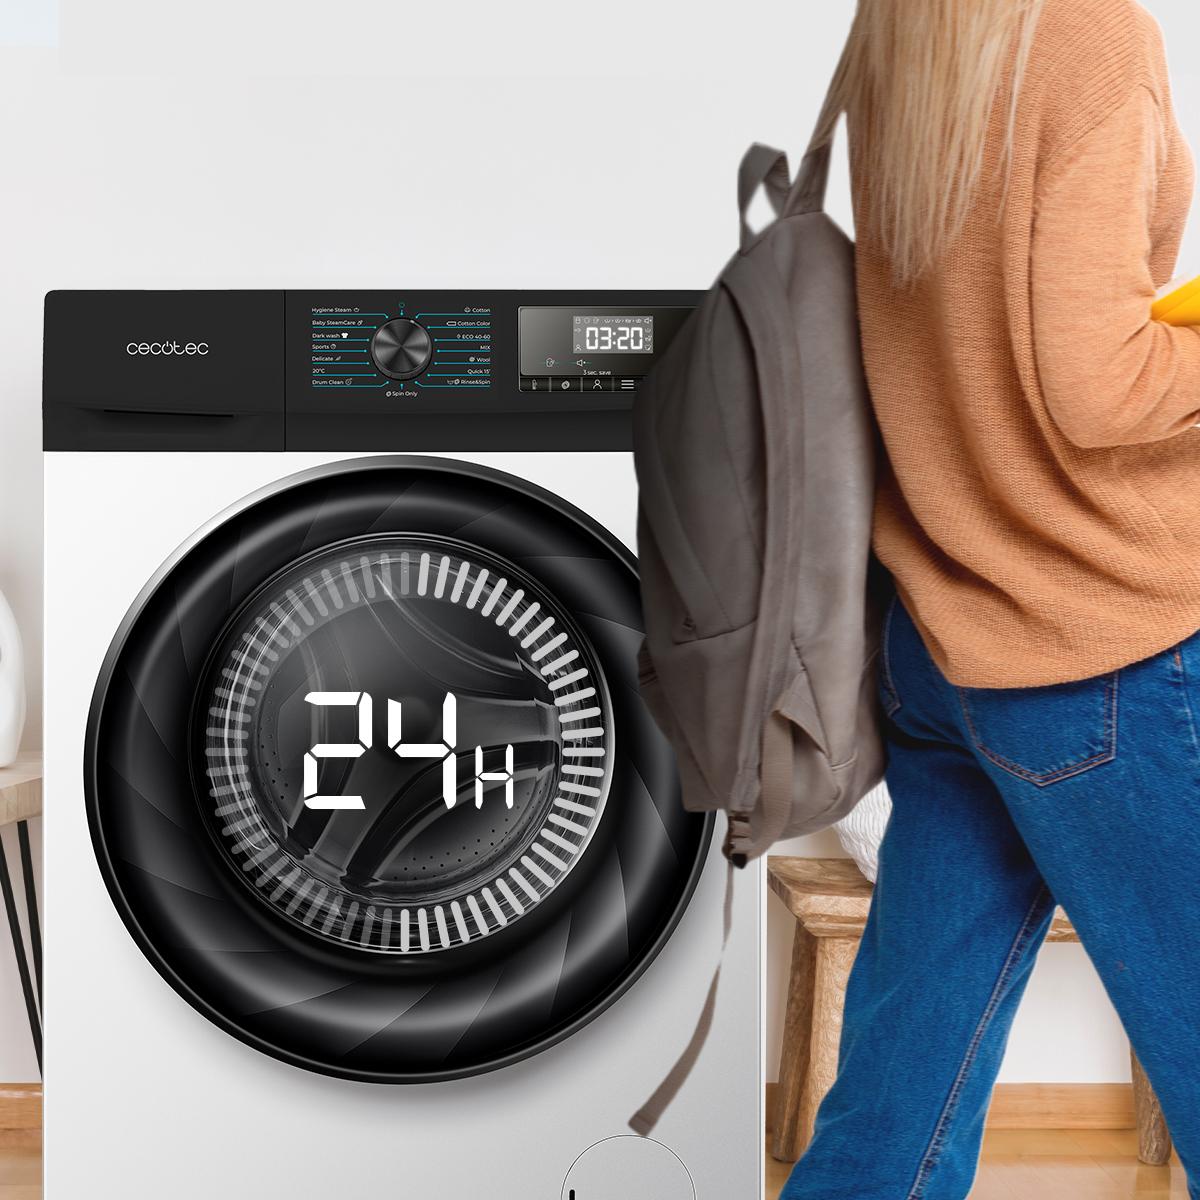 Cecotec on X: Descubre la nueva gama de #lavadoras Bolero Dresscode.✨  Diseñadas con la última tecnología. 🙌 Con motor Inverter Plus,  desinfección por vapor, hasta 12 kg de carga, sistema de autolimpieza